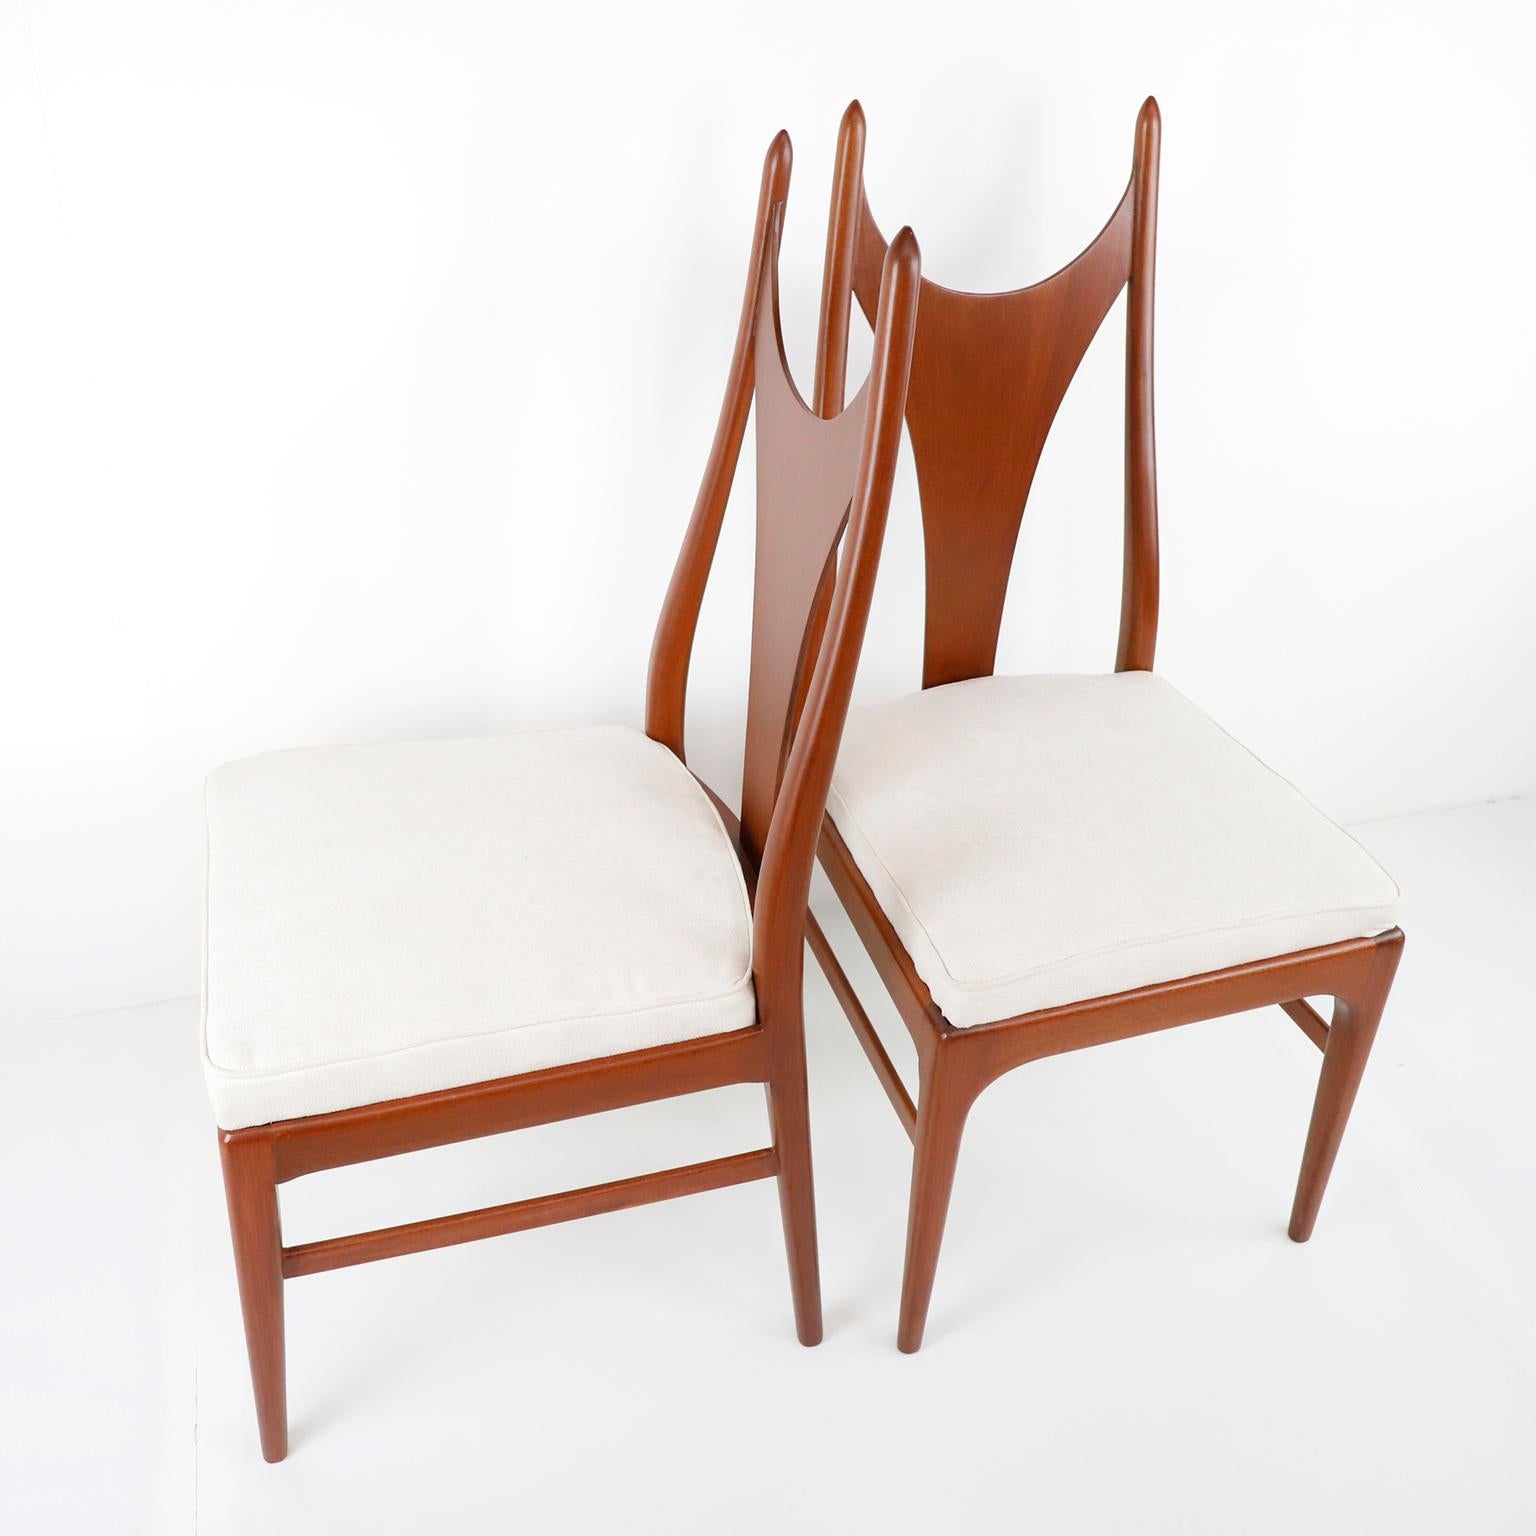 Um 1960 bieten wir diesen Satz von 4 original mexikanischen Stühlen aus der Mitte des Jahrhunderts an, die von Eugenio Escudero für D'Escudero, S.A. entworfen wurden. Dieser atemberaubende Stuhl verfügt über einen fantastischen Mahagoniholzrahmen